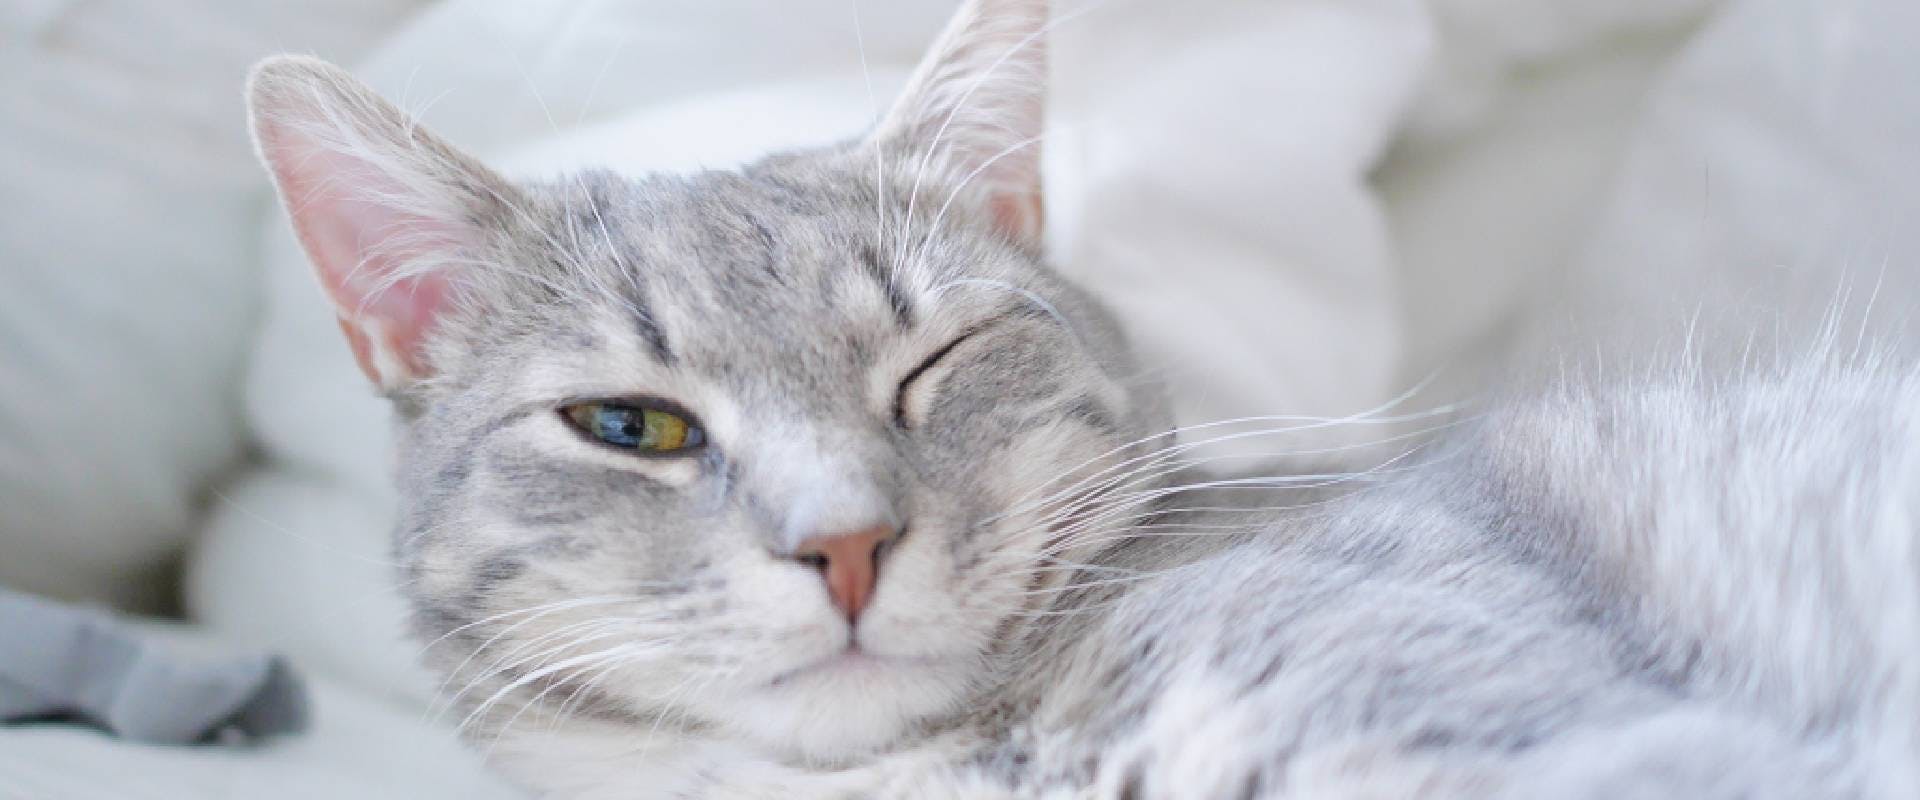 Grey cat winking - a weird cat behavior